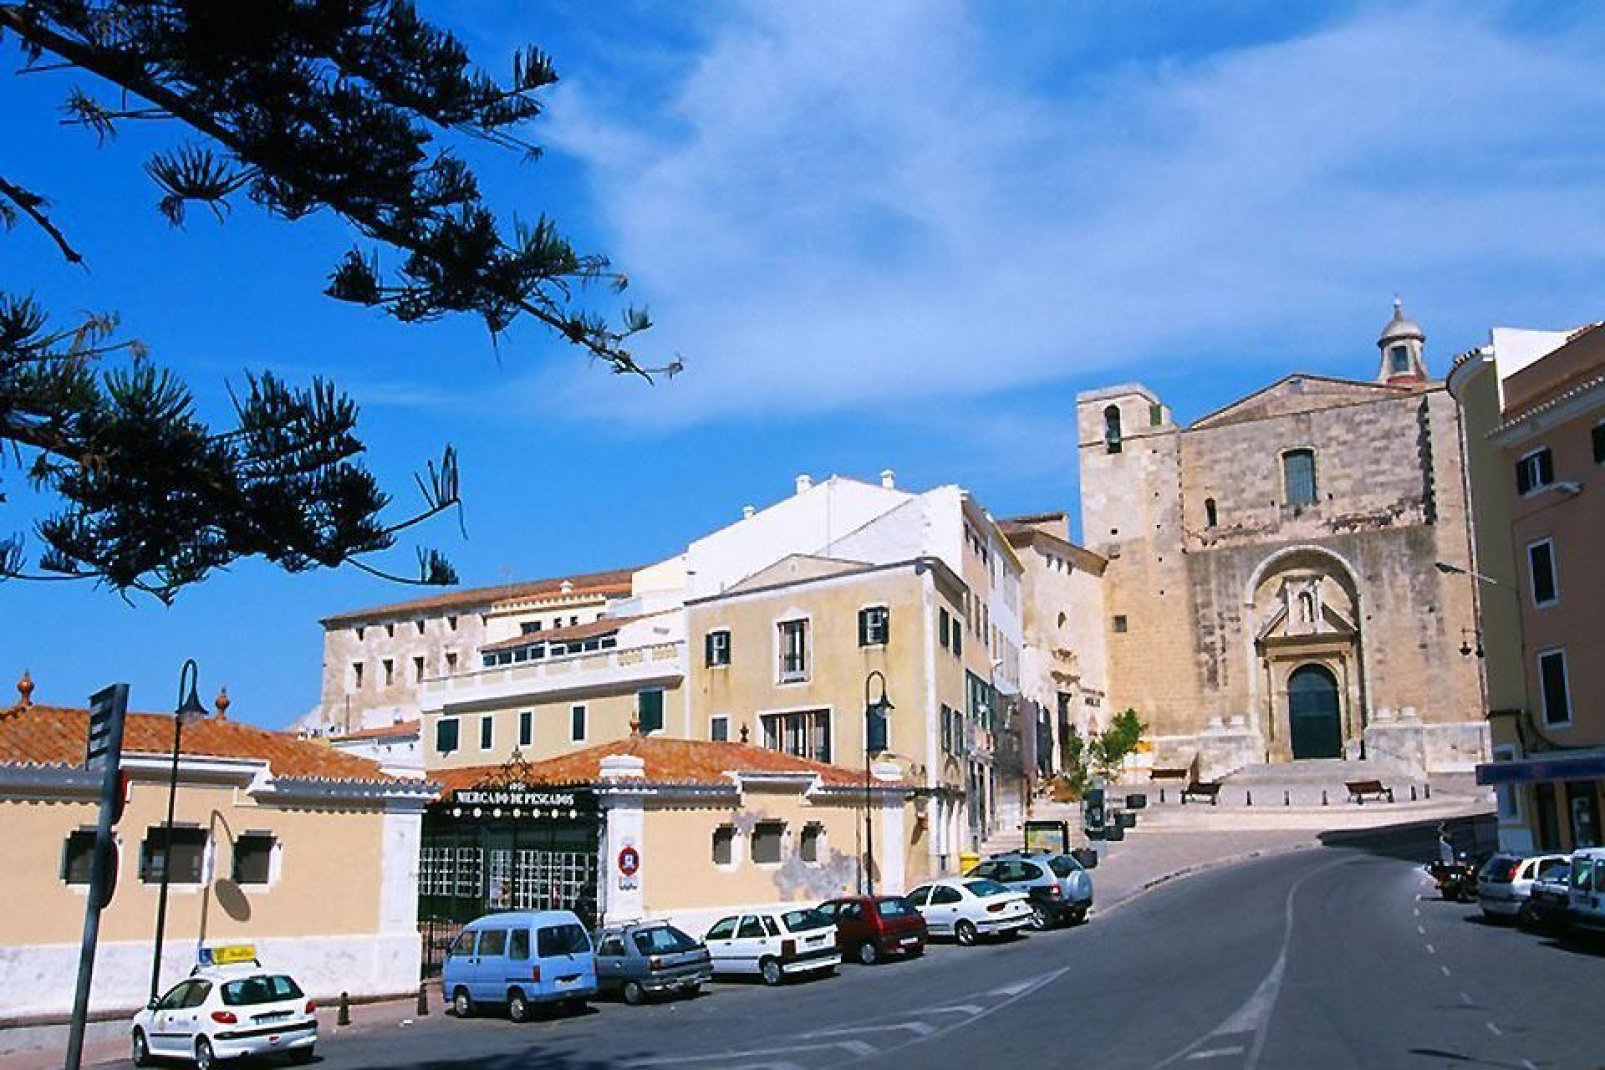 Legenden zufolge war ein Bruder Hannibals Namensgeber der Hauptstadt Menorcas.